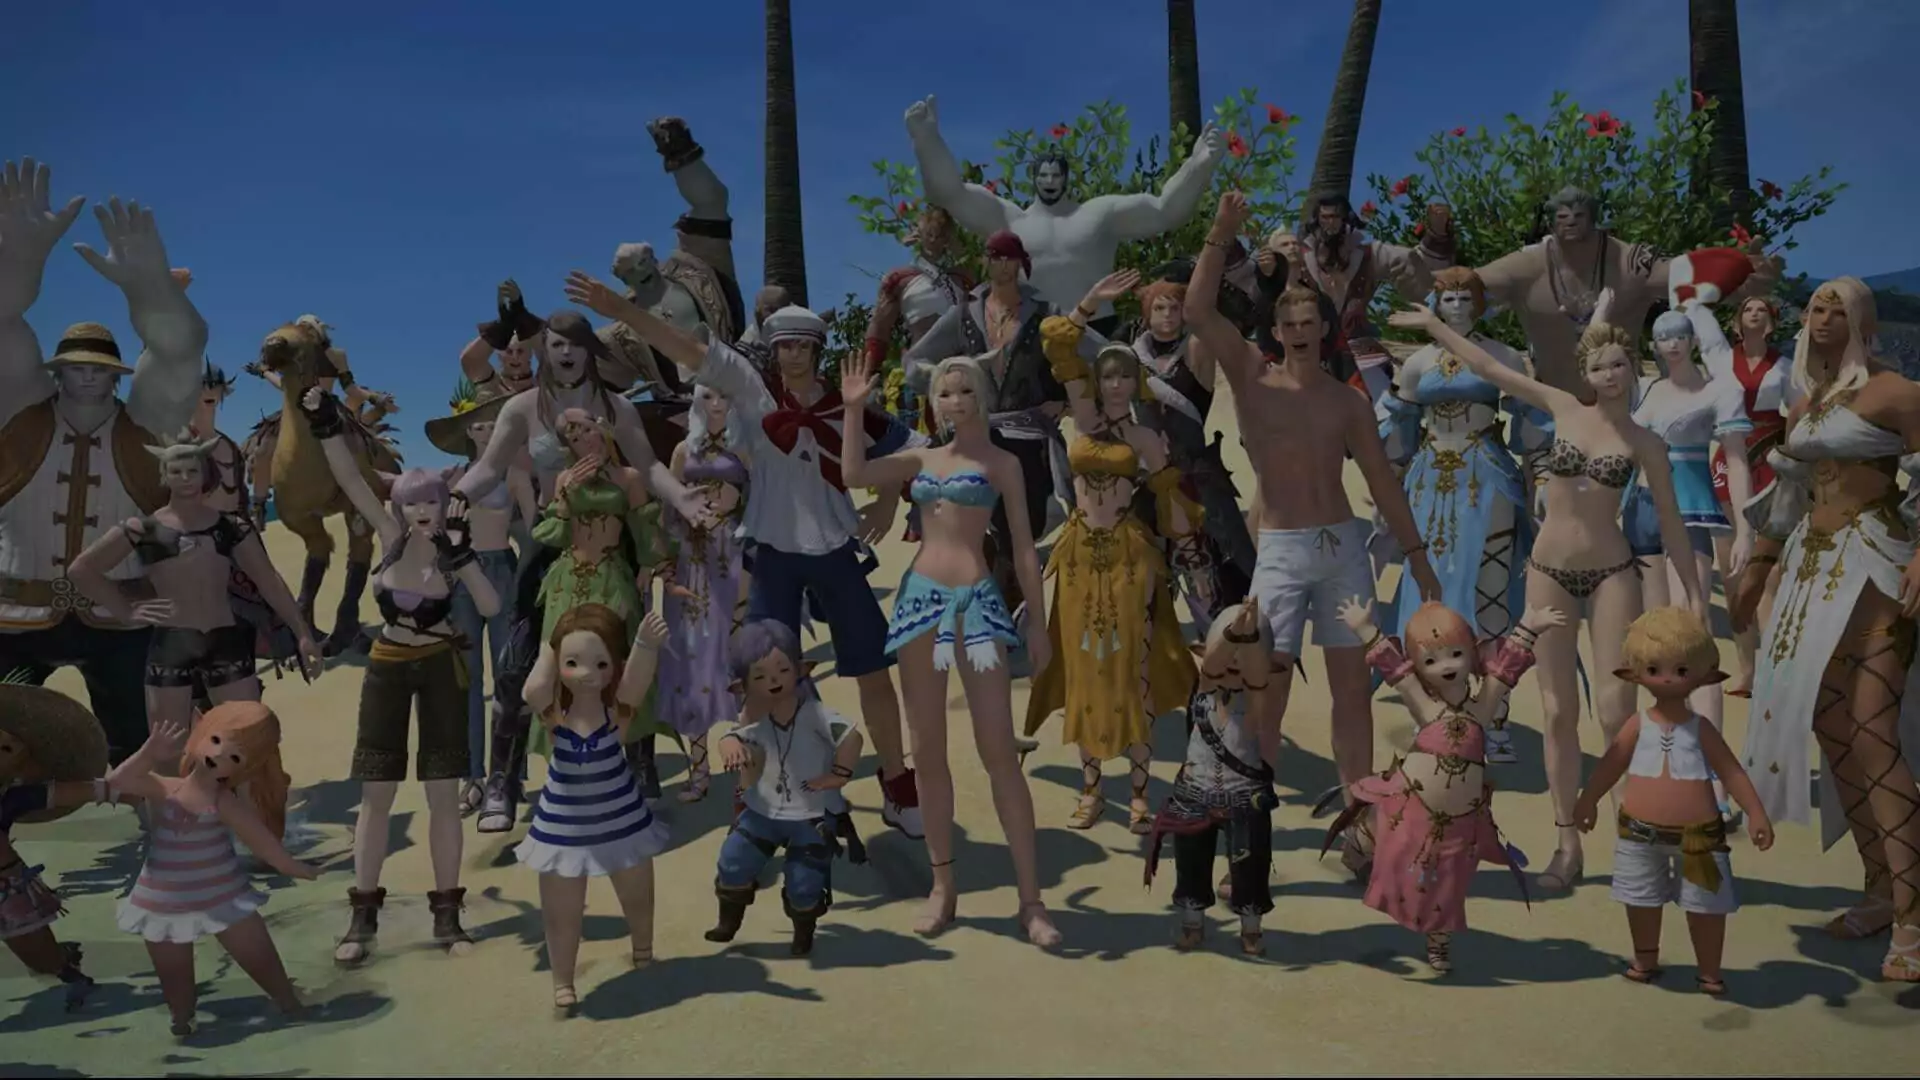 Une photo de groupe de nombreux personnages dans des tenues estivales réunies sur une plage et faisant coucou.